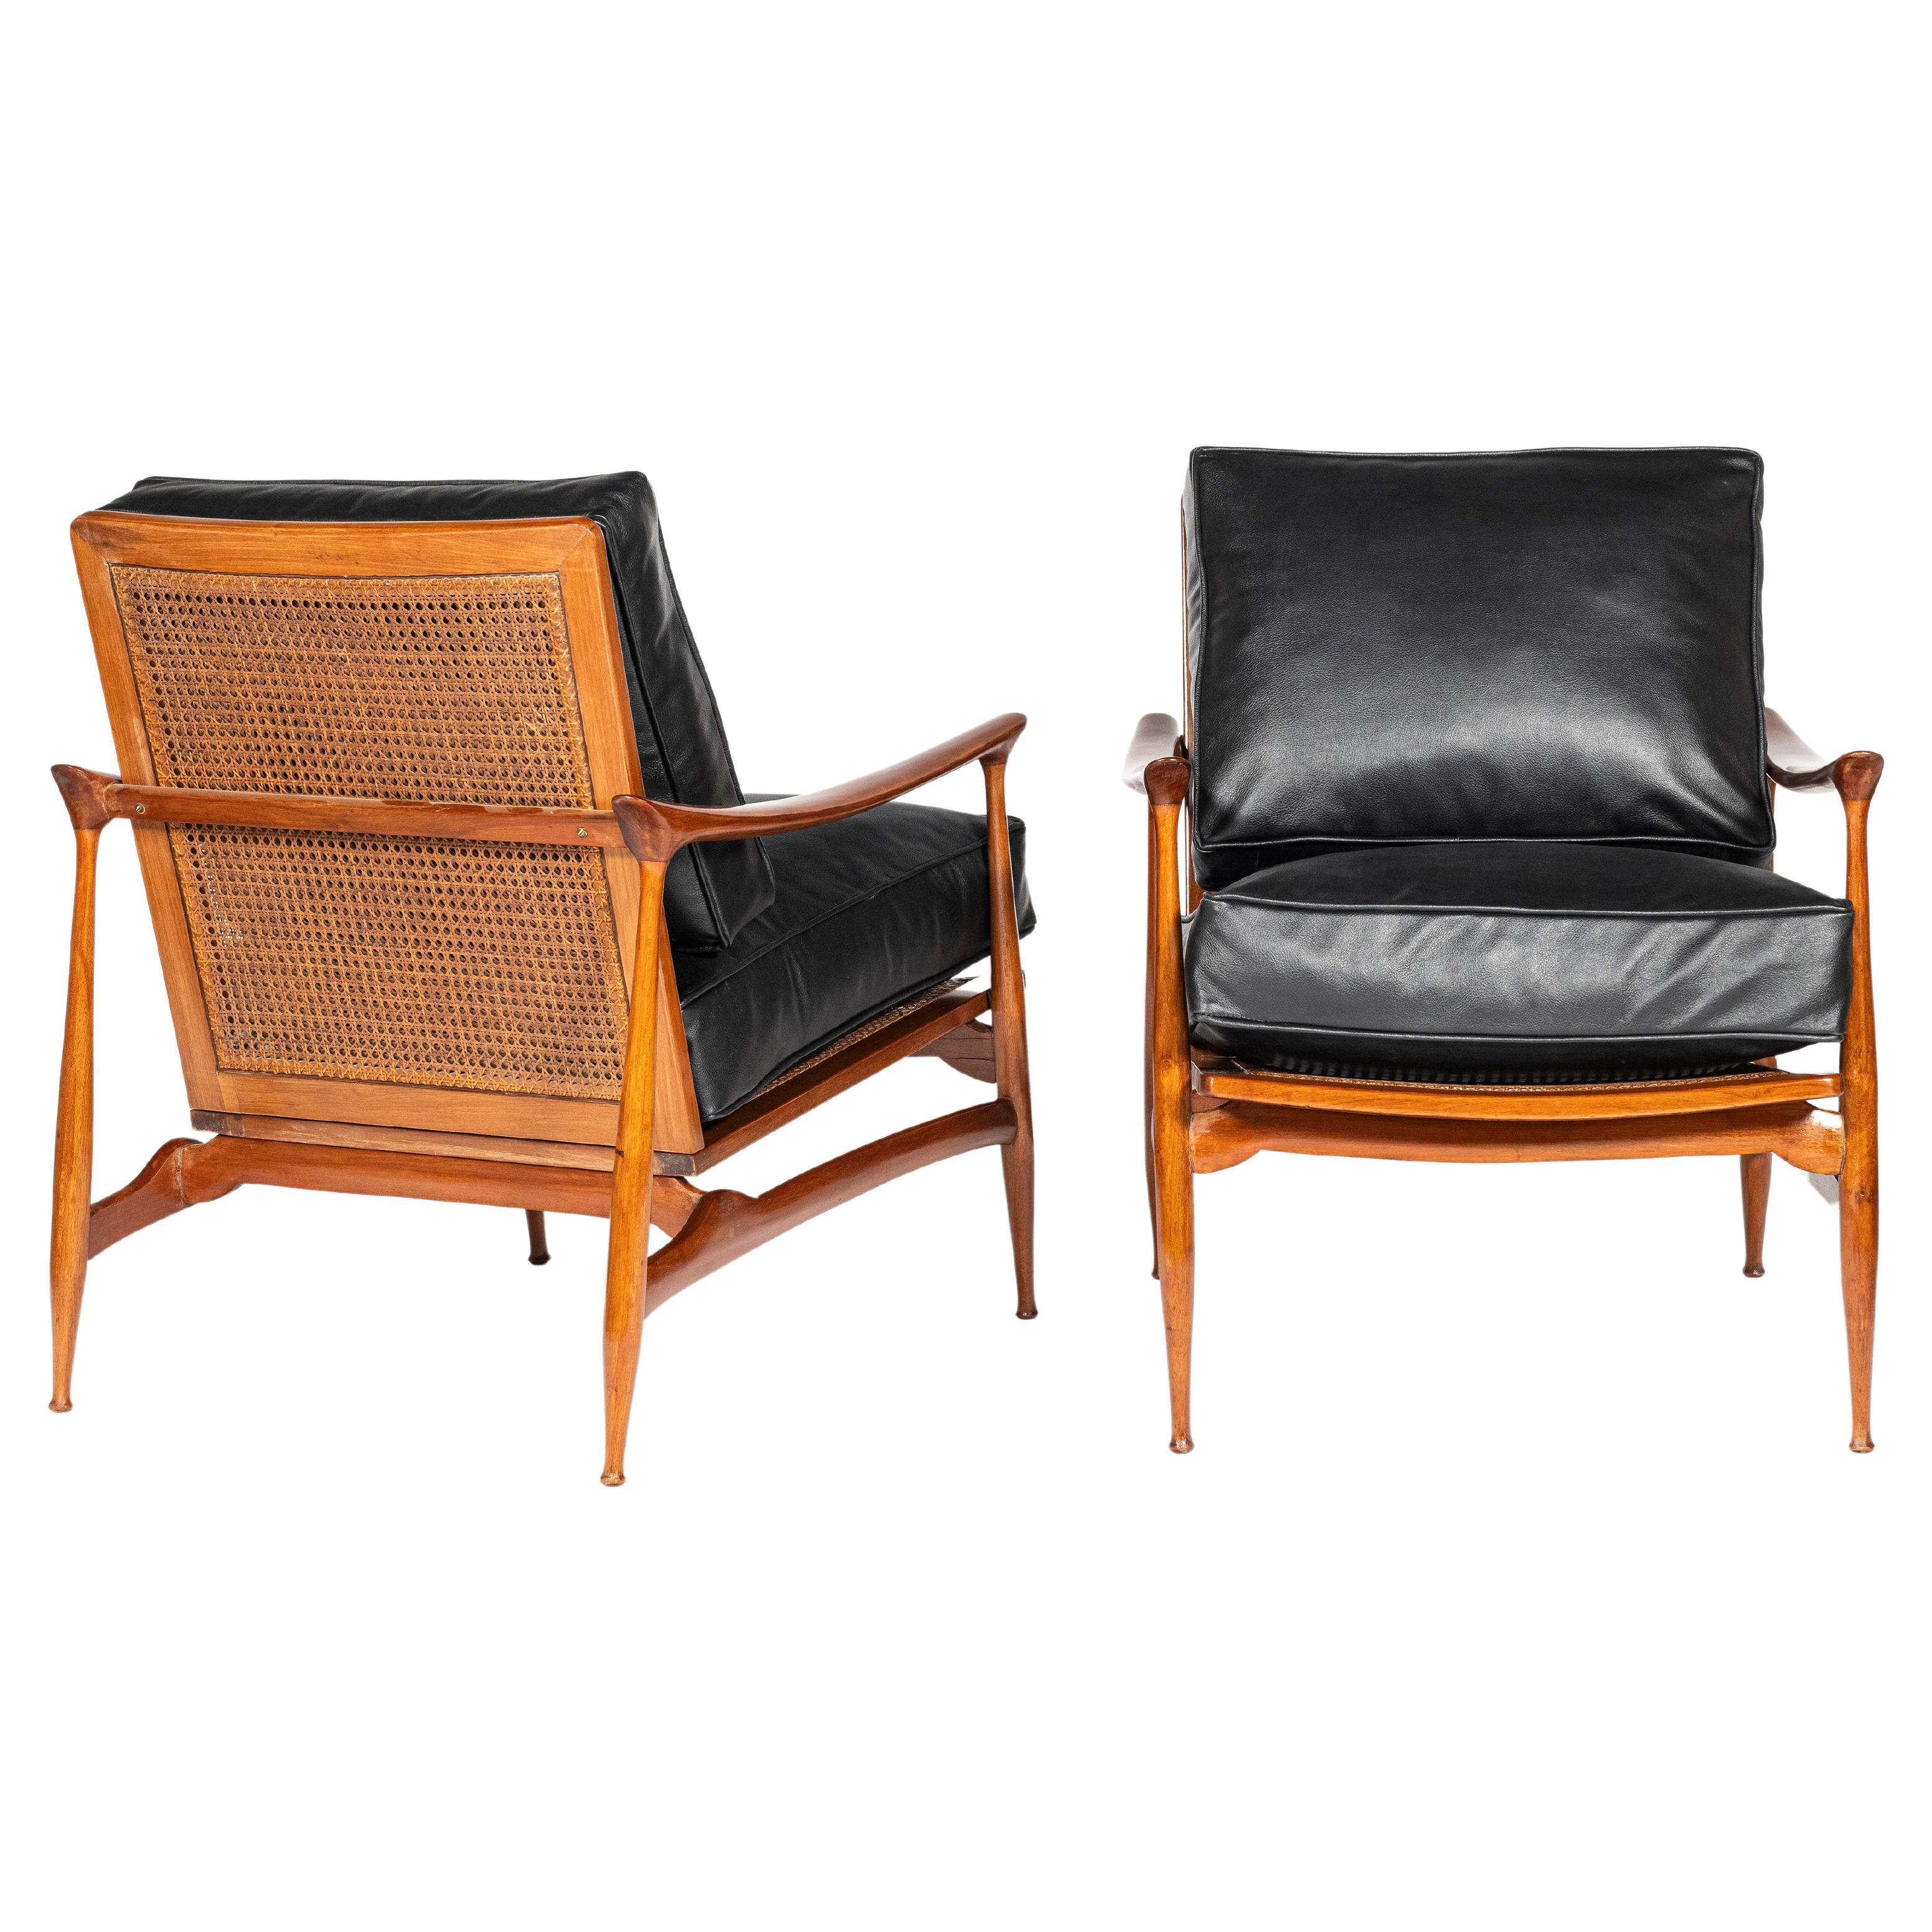 Skandinavische Sessel aus Holz, Rattan und Leder, um 1960, Paar